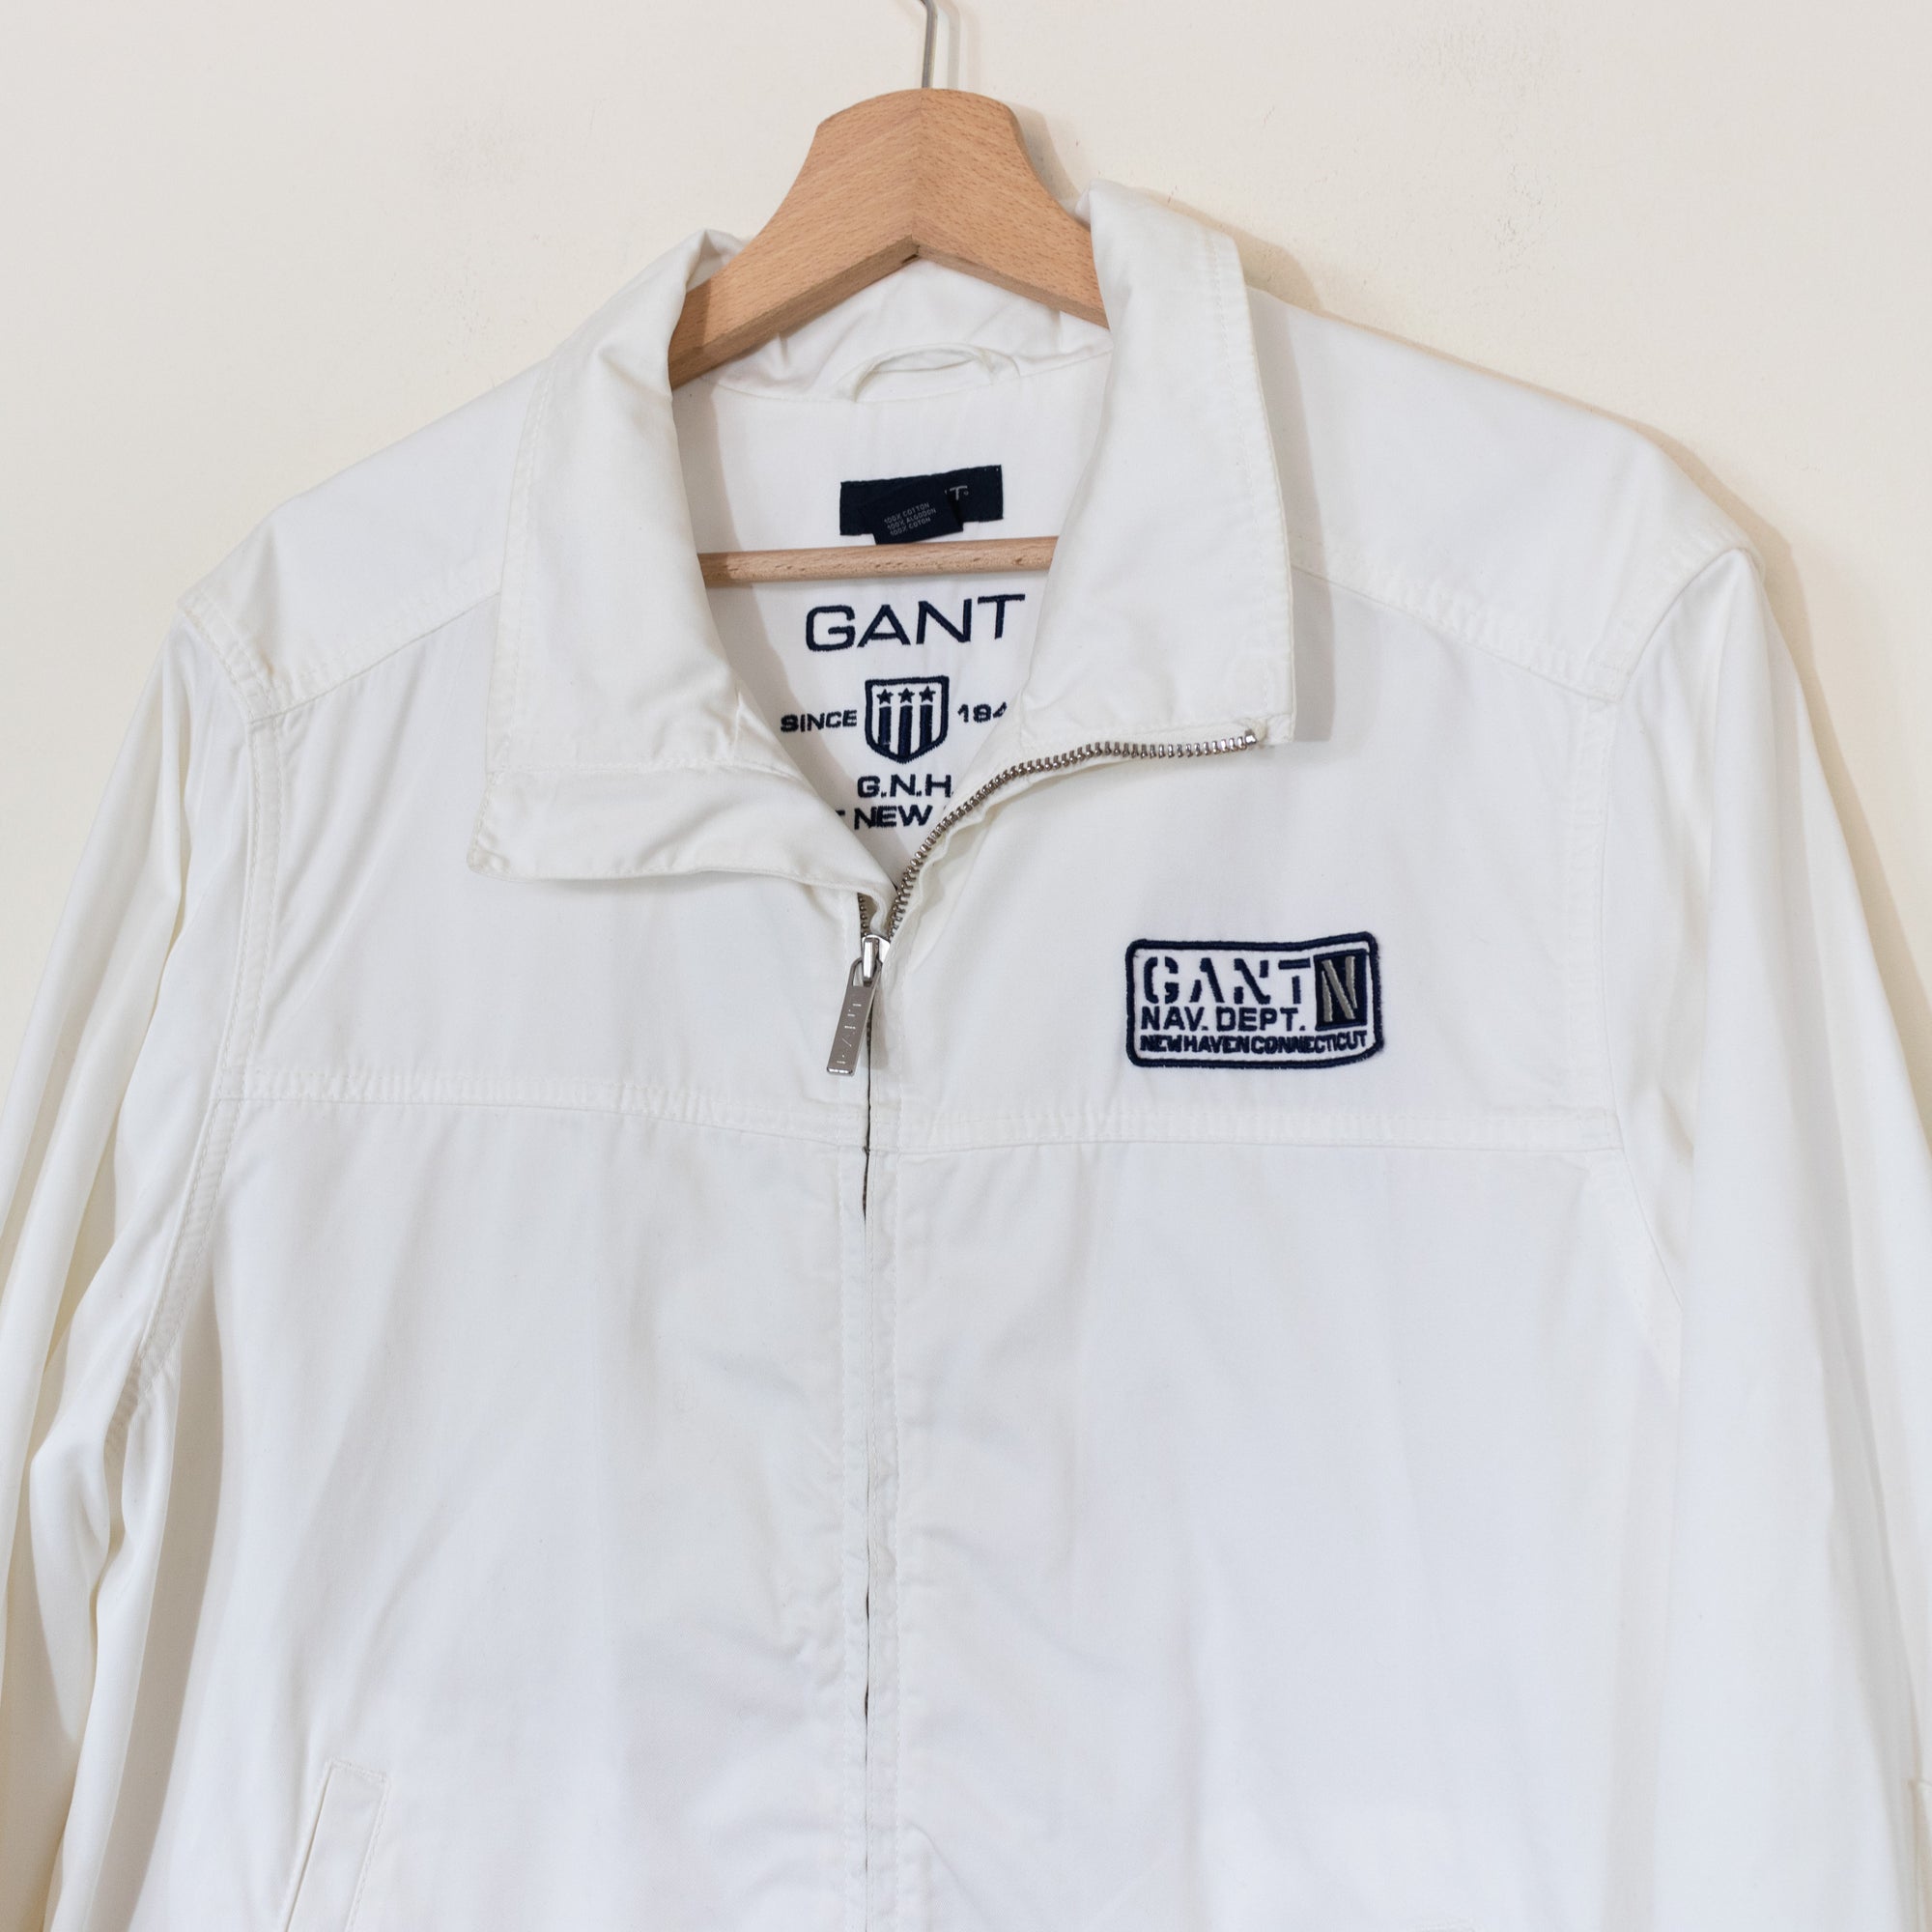 Gant jacket